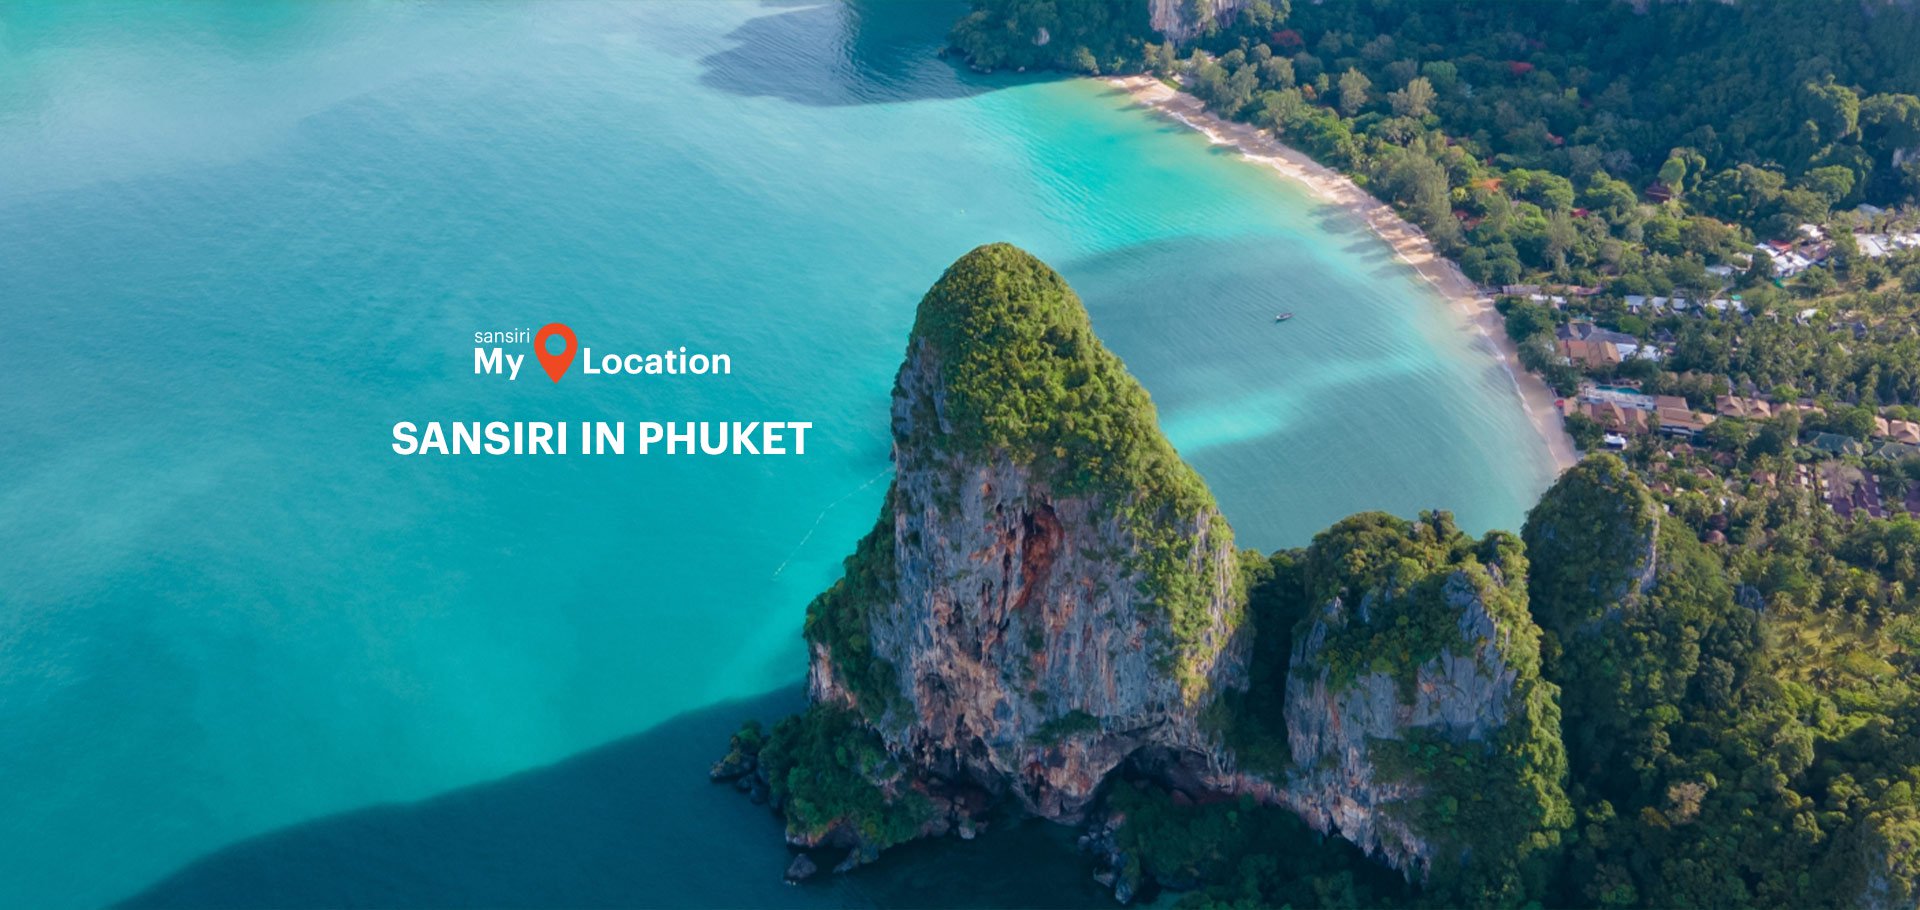 SANSIRI Phuket location